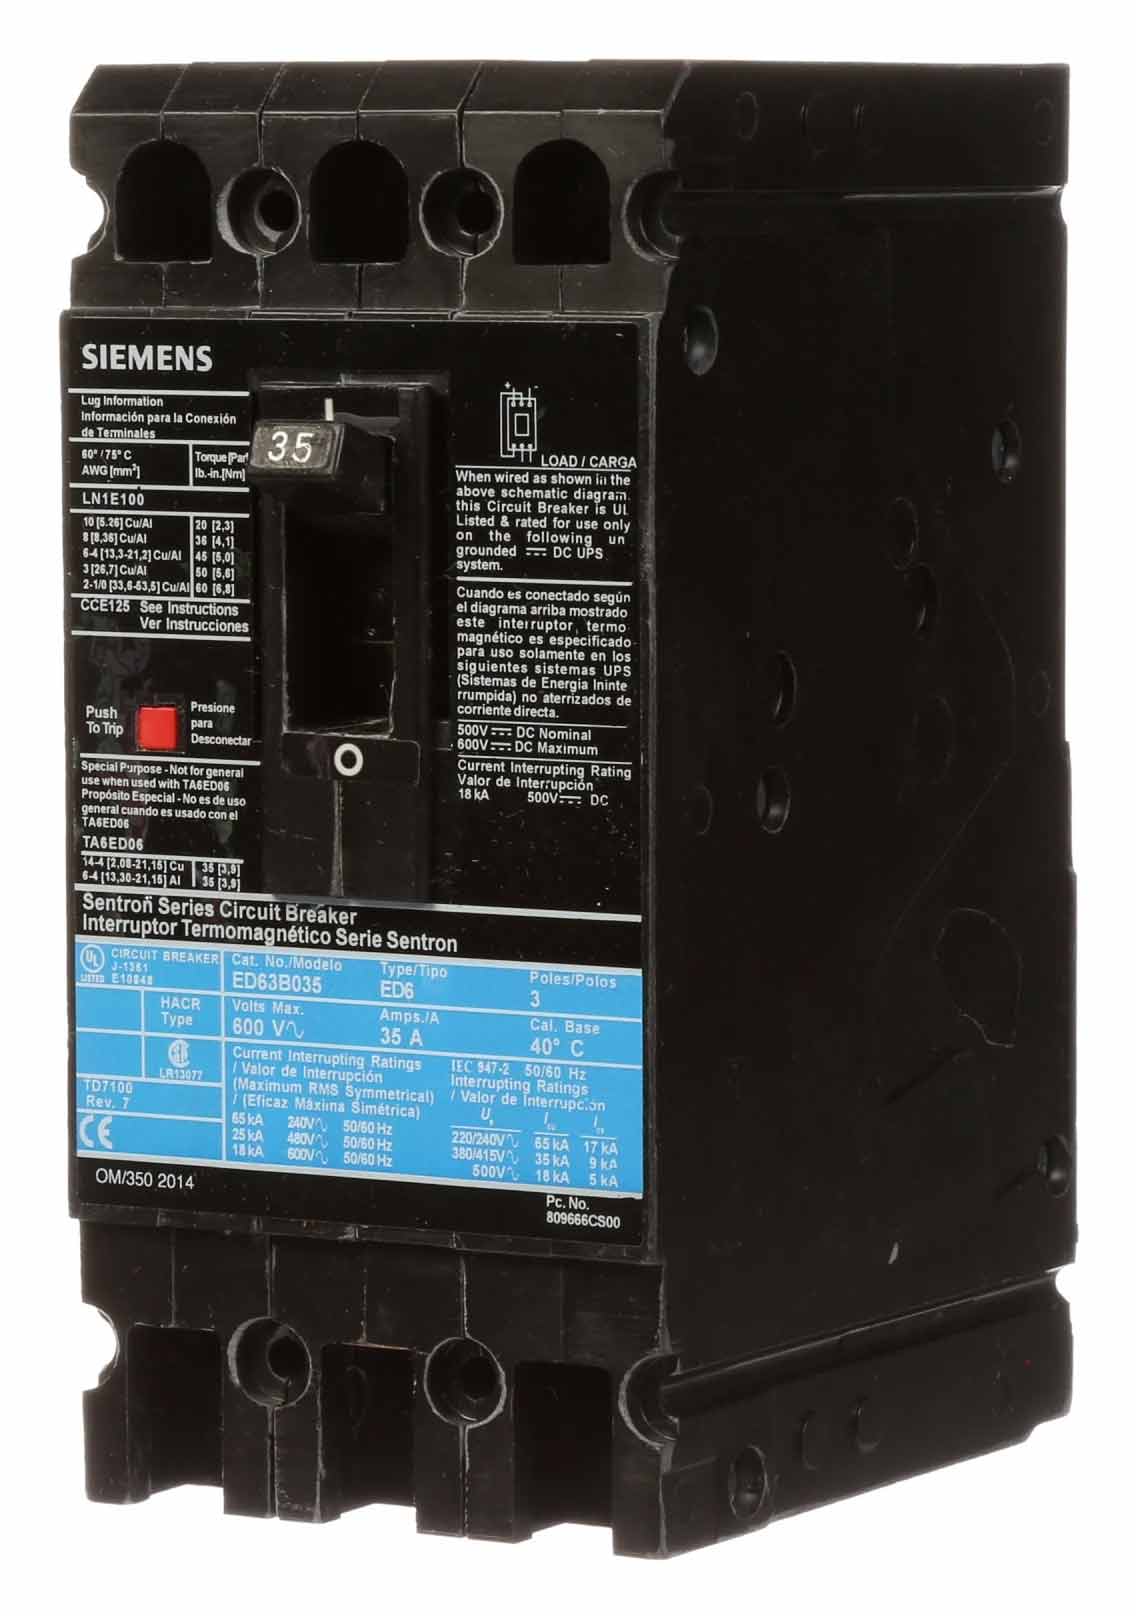 ED63A001 - Siemens - Molded Case Circuit Breaker